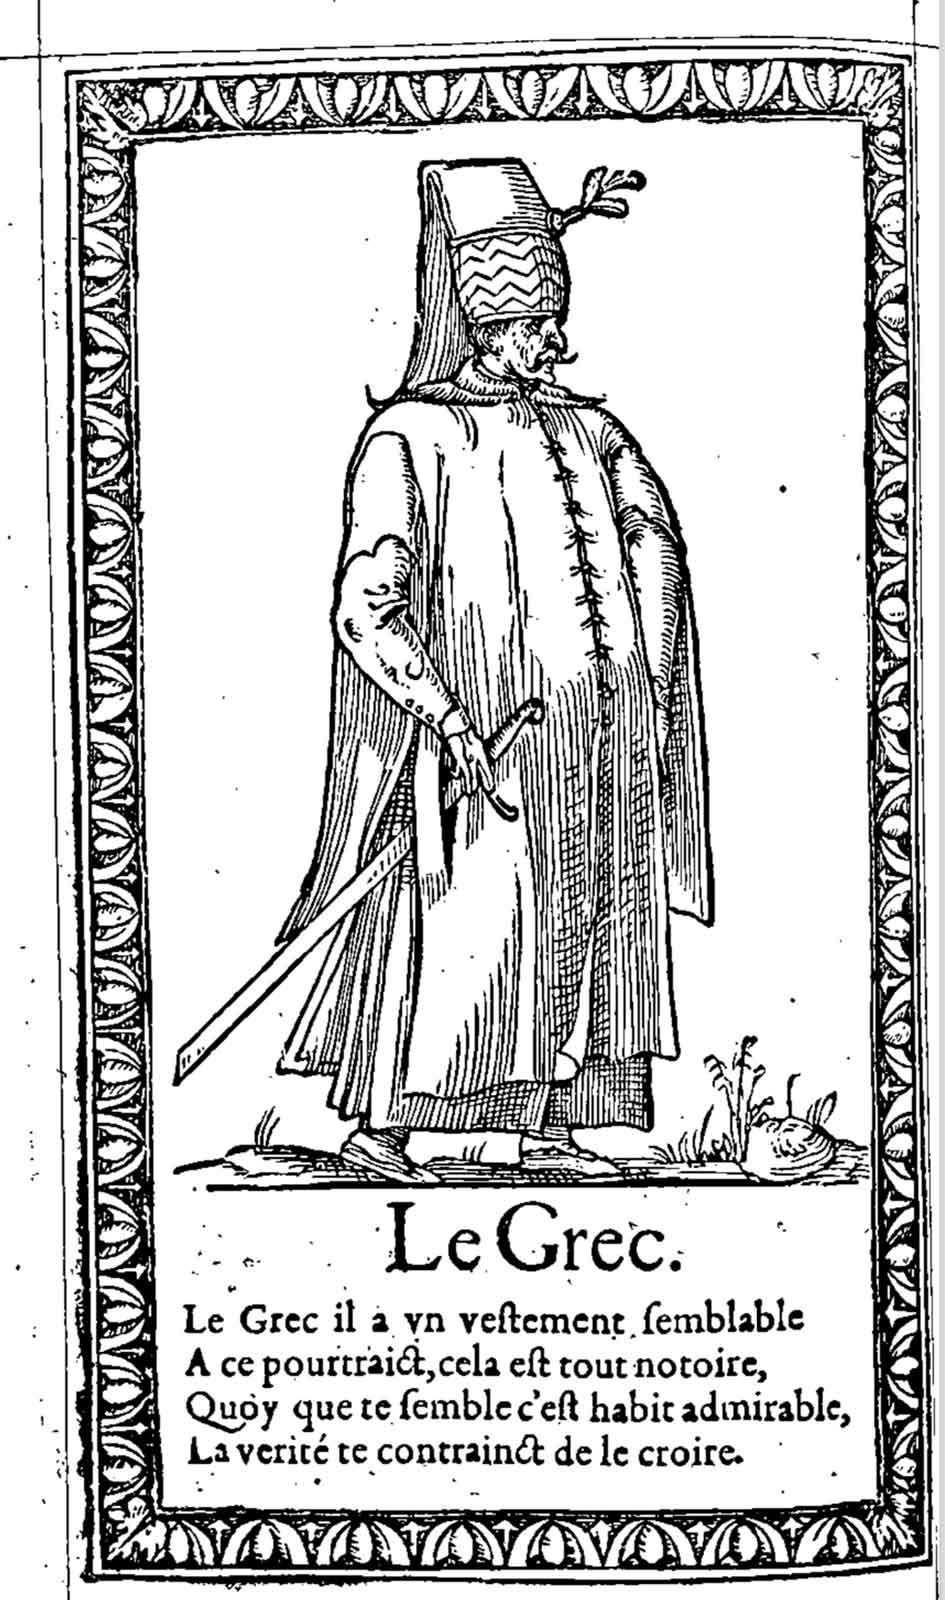 Le grec. Desprez, Recueil de la diversité des habits (1564)